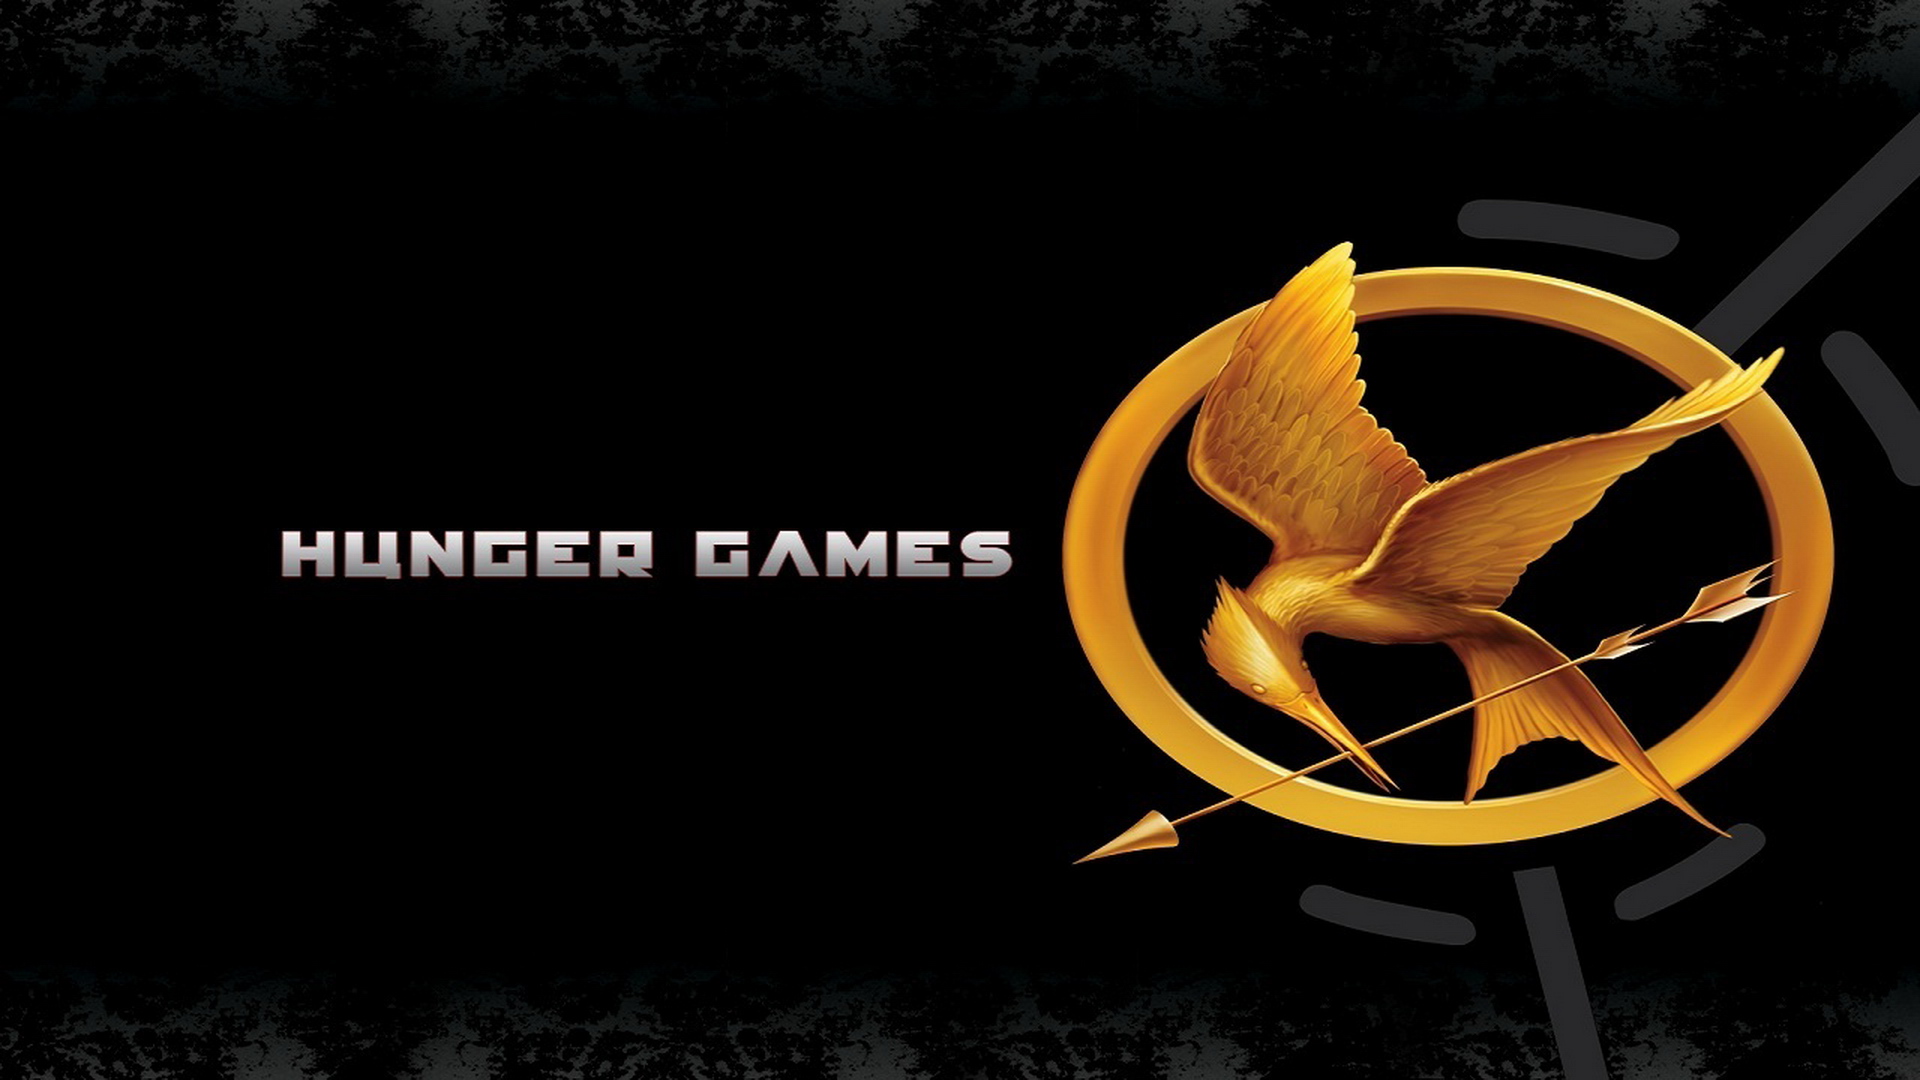 The Hunger Games 2012 Wallpaper 3 HD Desktop Wallpapers 1920x1080